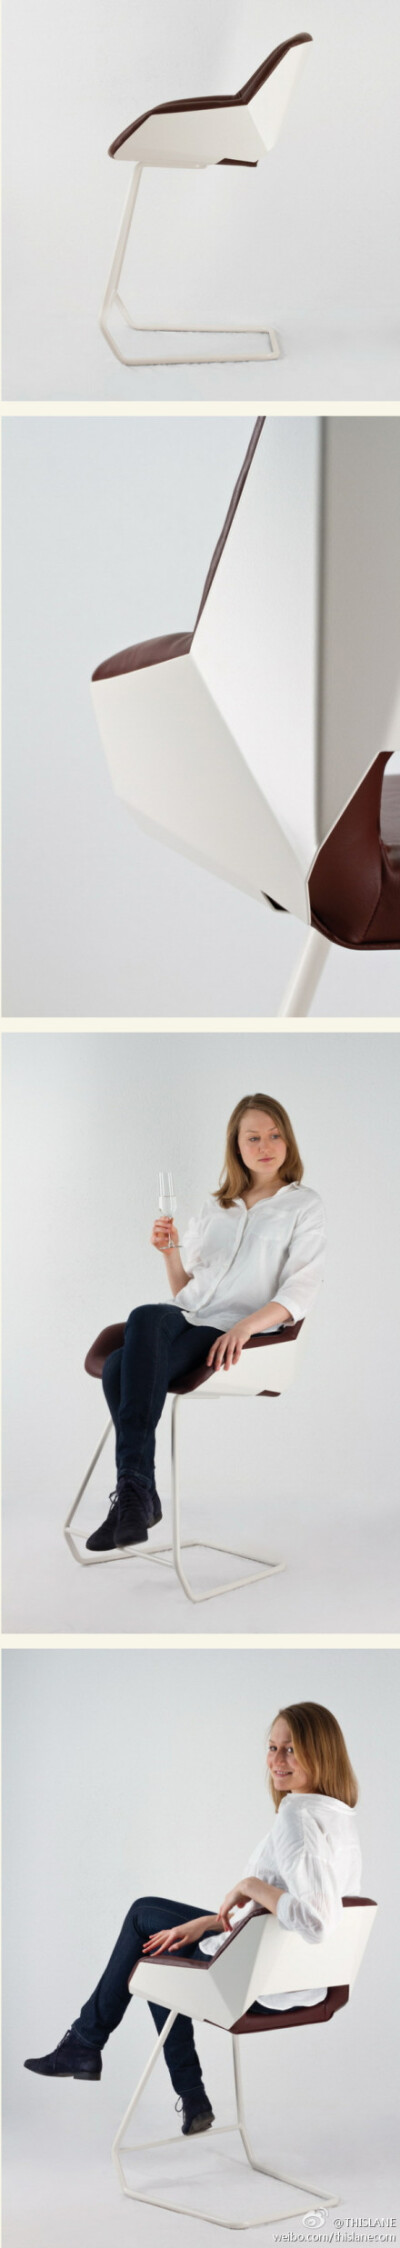 一把舒适造型优美的椅子要集成设计师的所有心血。来自德国的设计师Moritz von Helldorff所设计的这款名为“Picard”的椅子，其实是一把高脚凳与躺椅的结合体，坐在上面的人能够与站着的人保持平视，几何构成的椅身设…